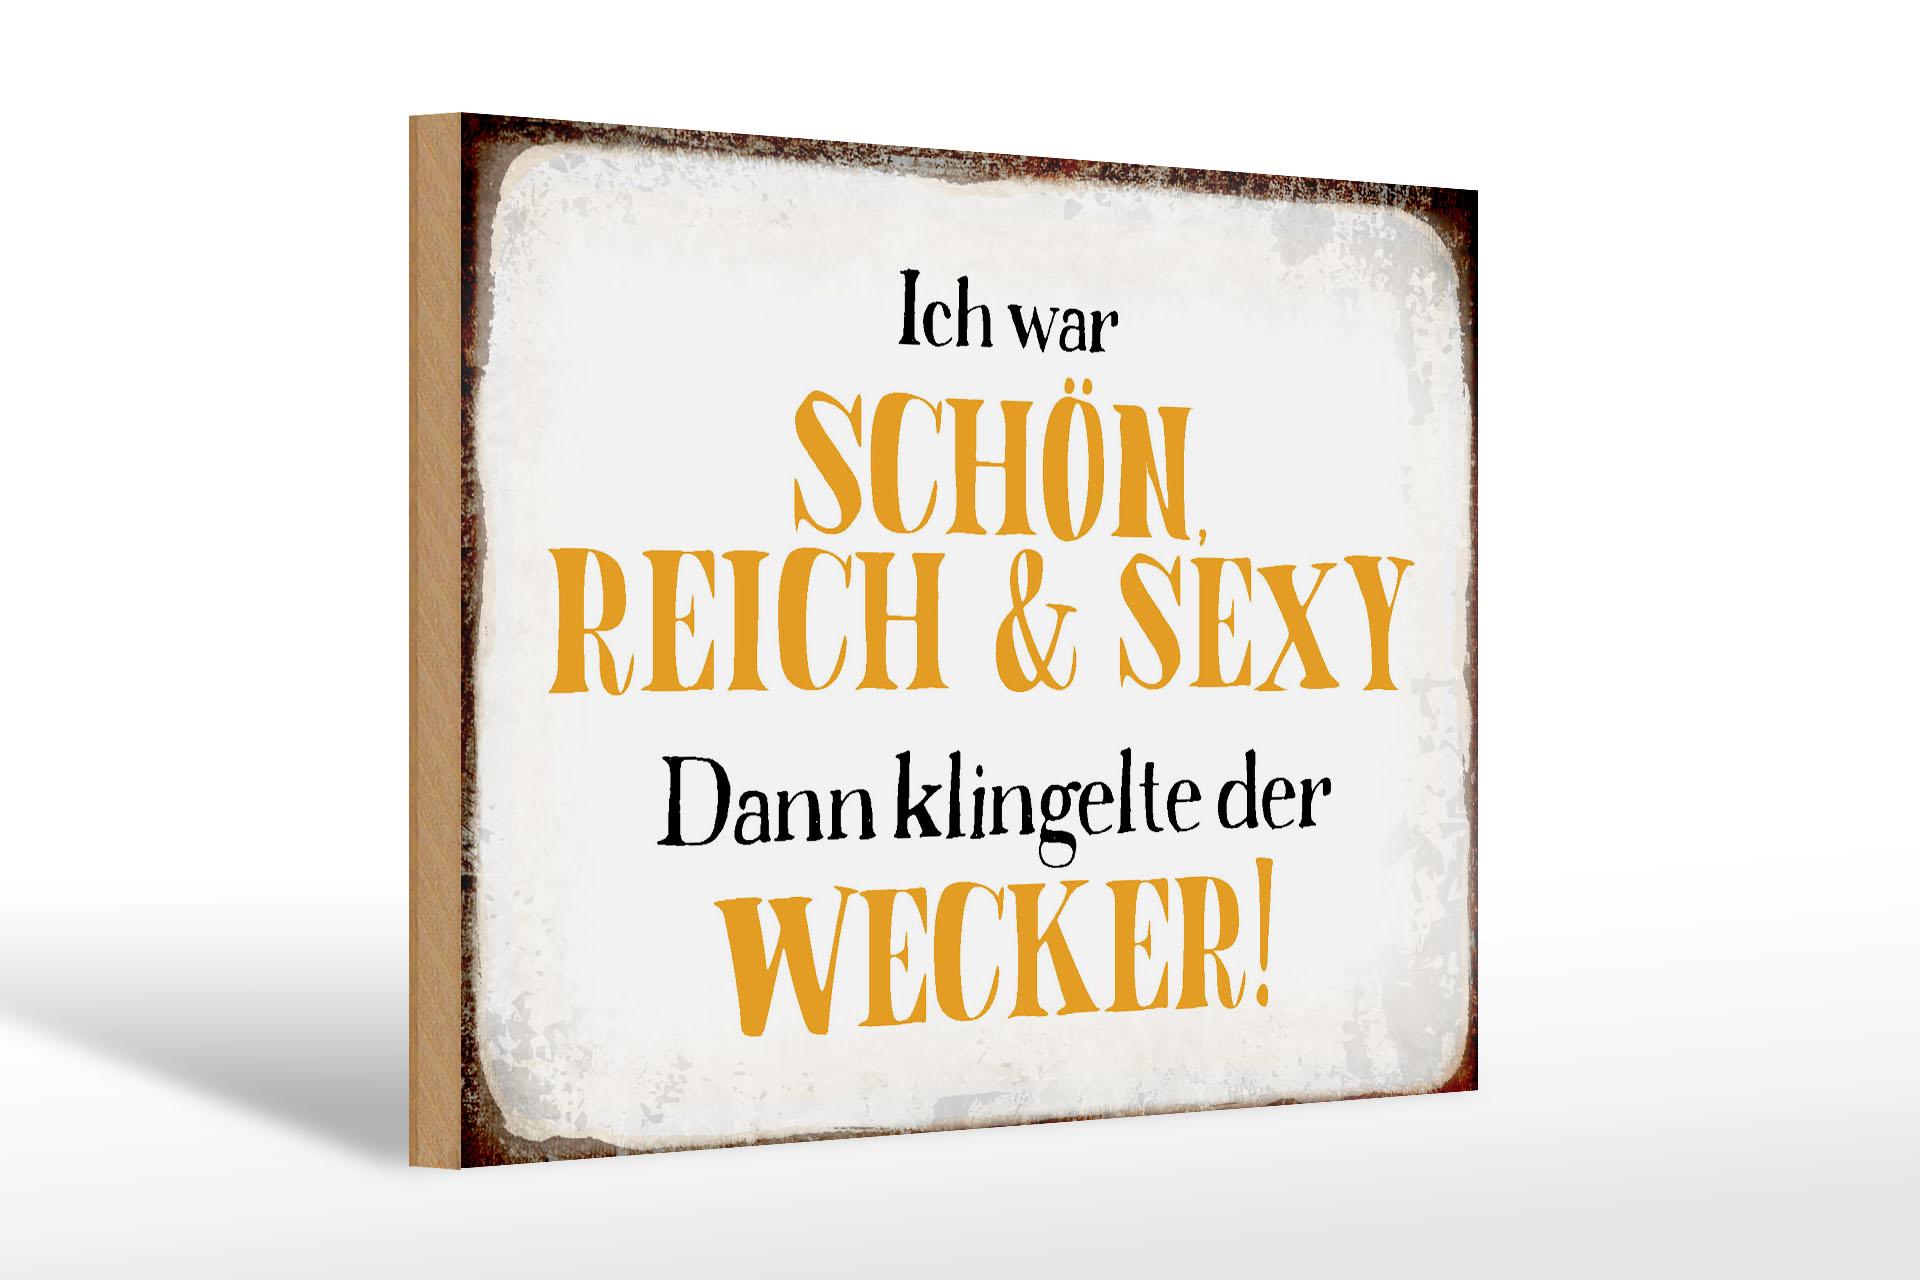 Holzschild Spruch 30x20cm ich schön reich sexy dann Wecker Deko Schild wooden sign